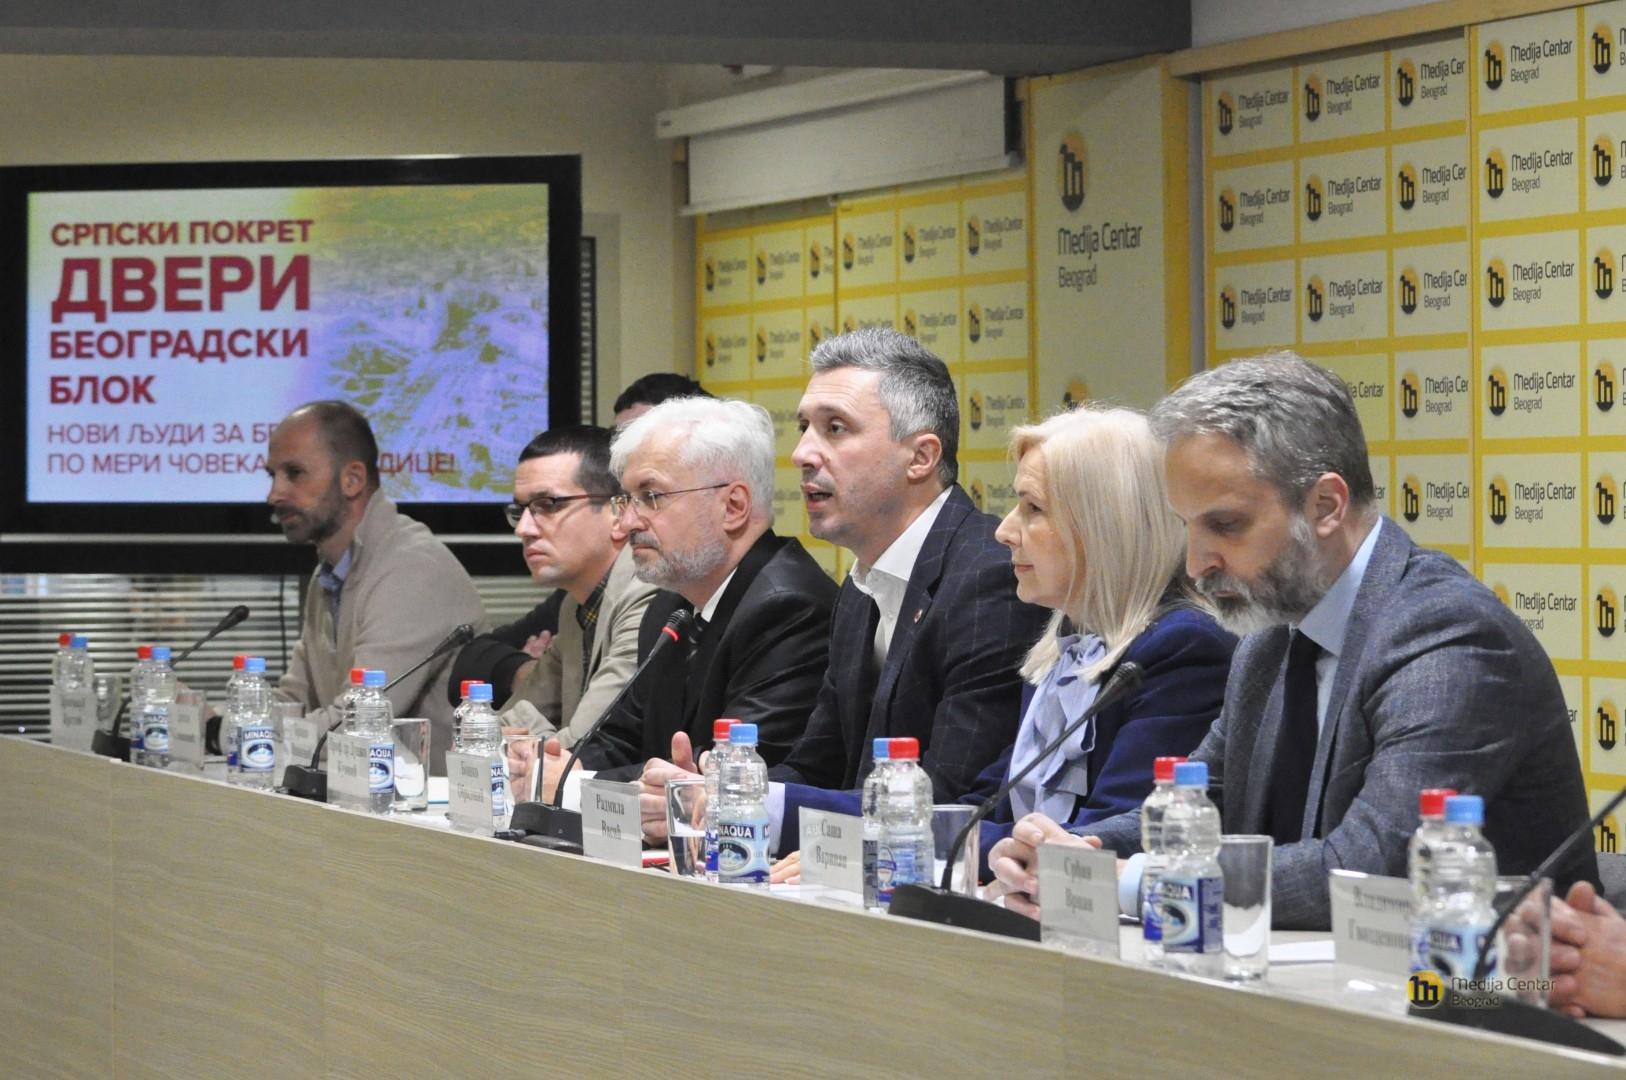 Konferencija za novinare u organizaciji Srpskog pokreta Dveri